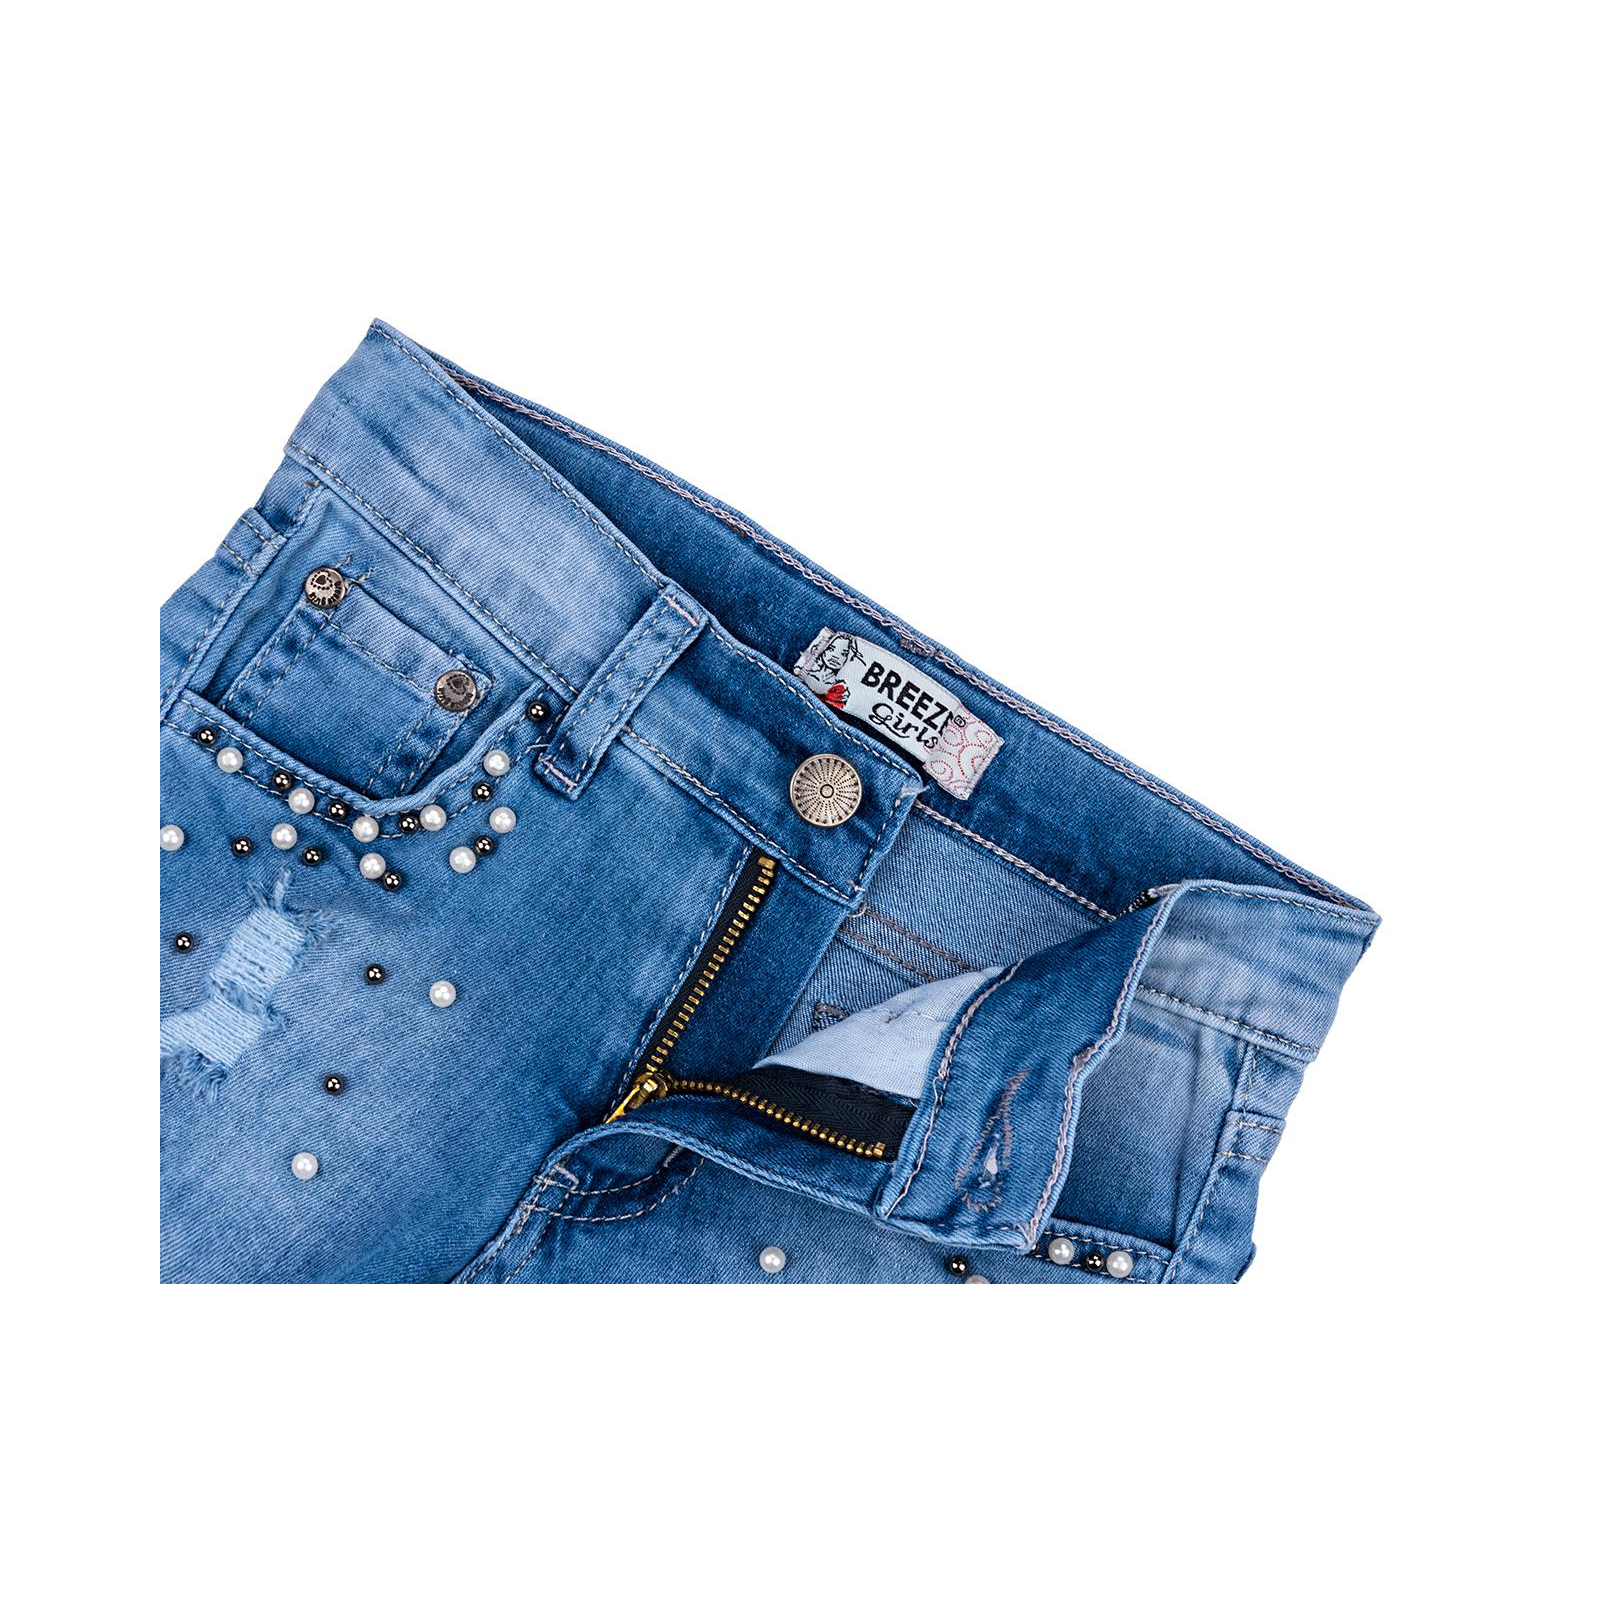 Шорты Breeze джинсовые с бусинами (20139-116G-blue) изображение 3